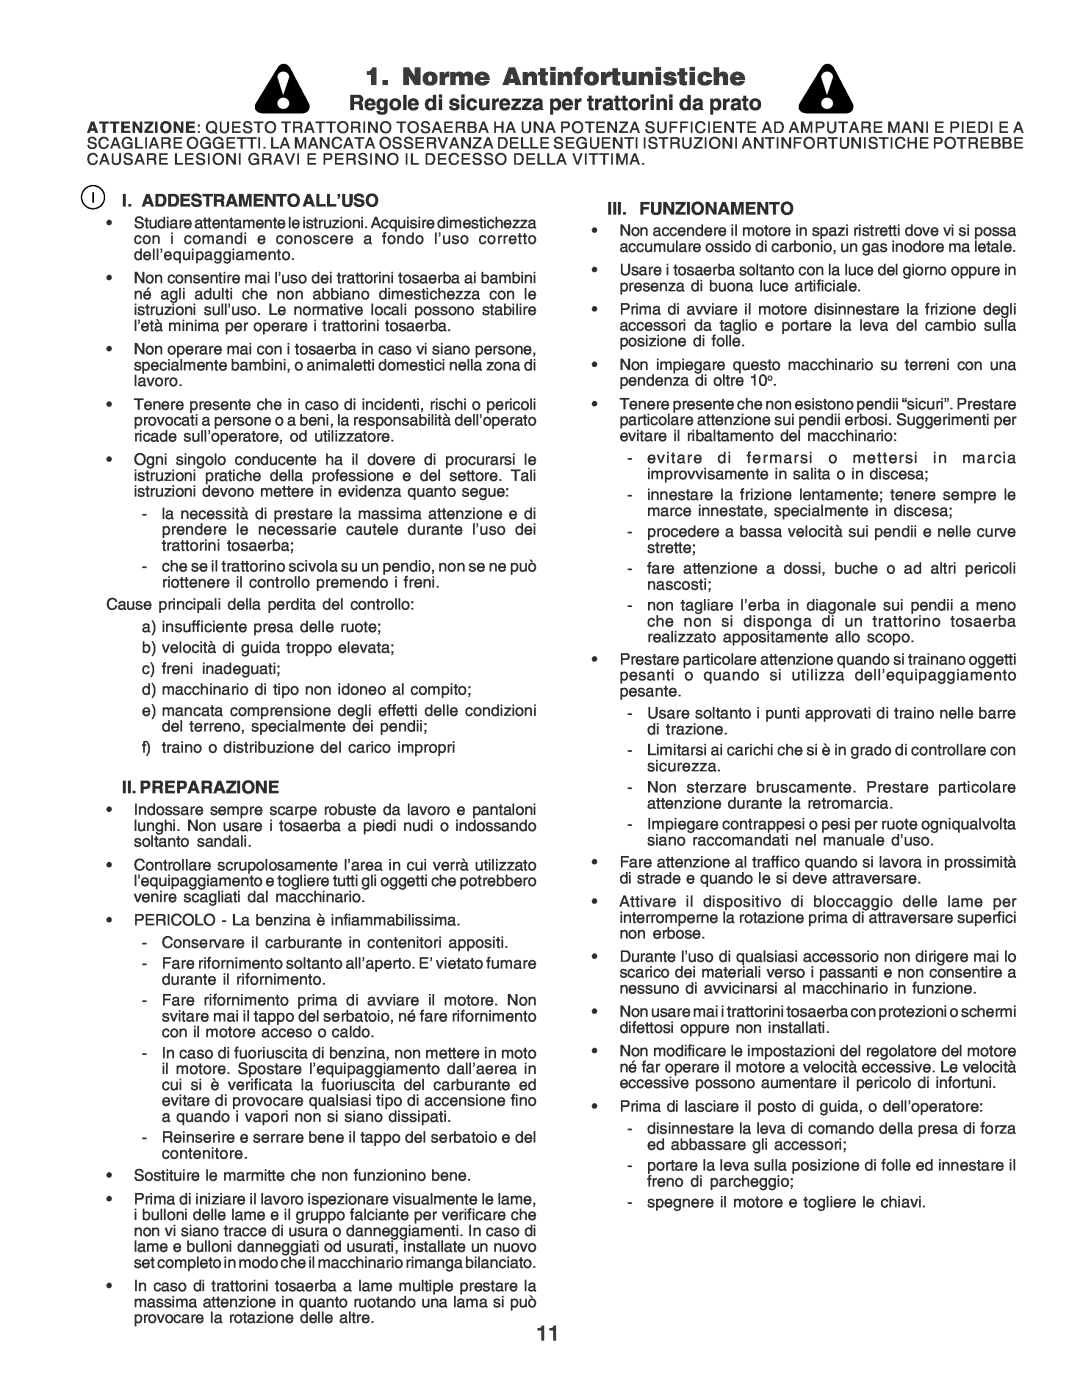 Husqvarna YT155 Norme Antinfortunistiche, Regole di sicurezza per trattorini da prato, I. Addestramento All’Uso 